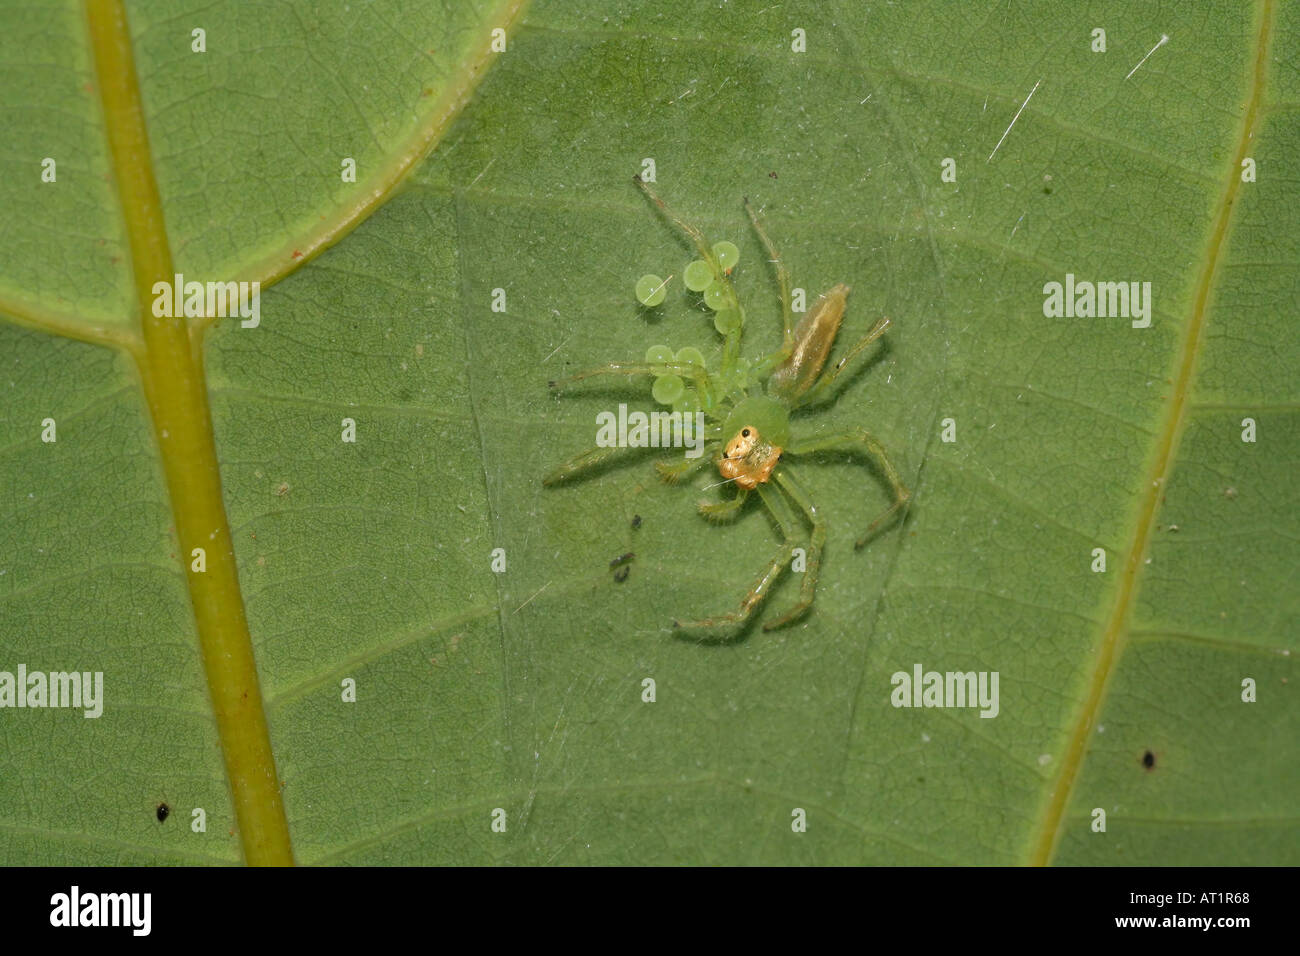 tropische Spinne Frau mit Ei Brut Singapur Asemonea SP. (Spinne Familie  Salticidae) tritt in Afrika und Südost-Asien Stockfotografie - Alamy